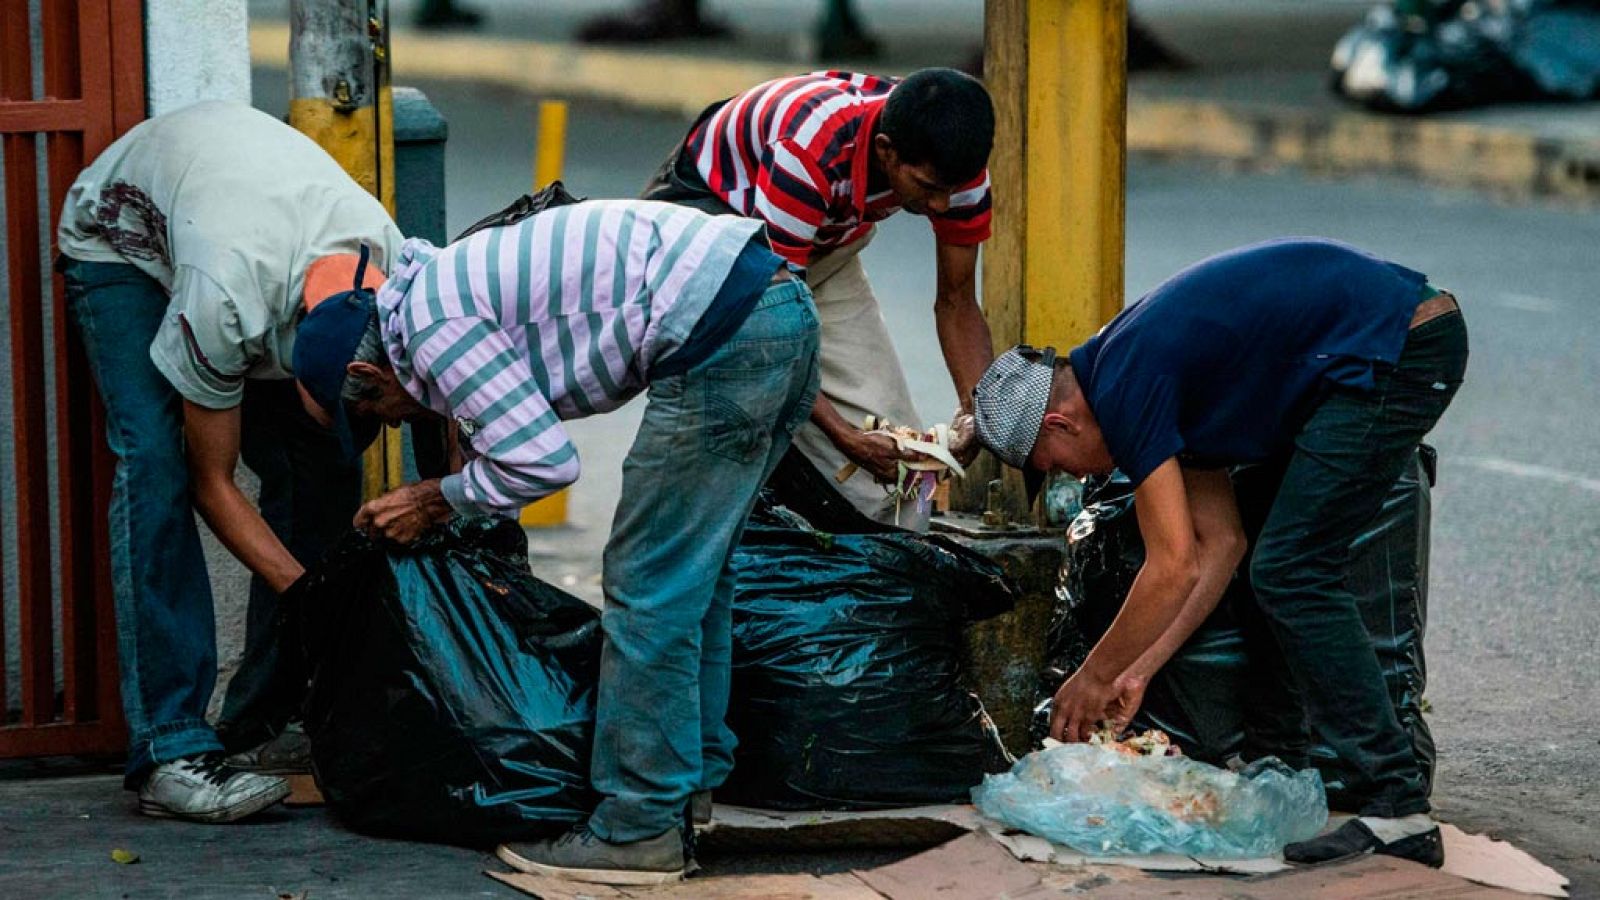 Imagen de la pobreza alimentaria existente en las calles de Caracas (Venezuela)